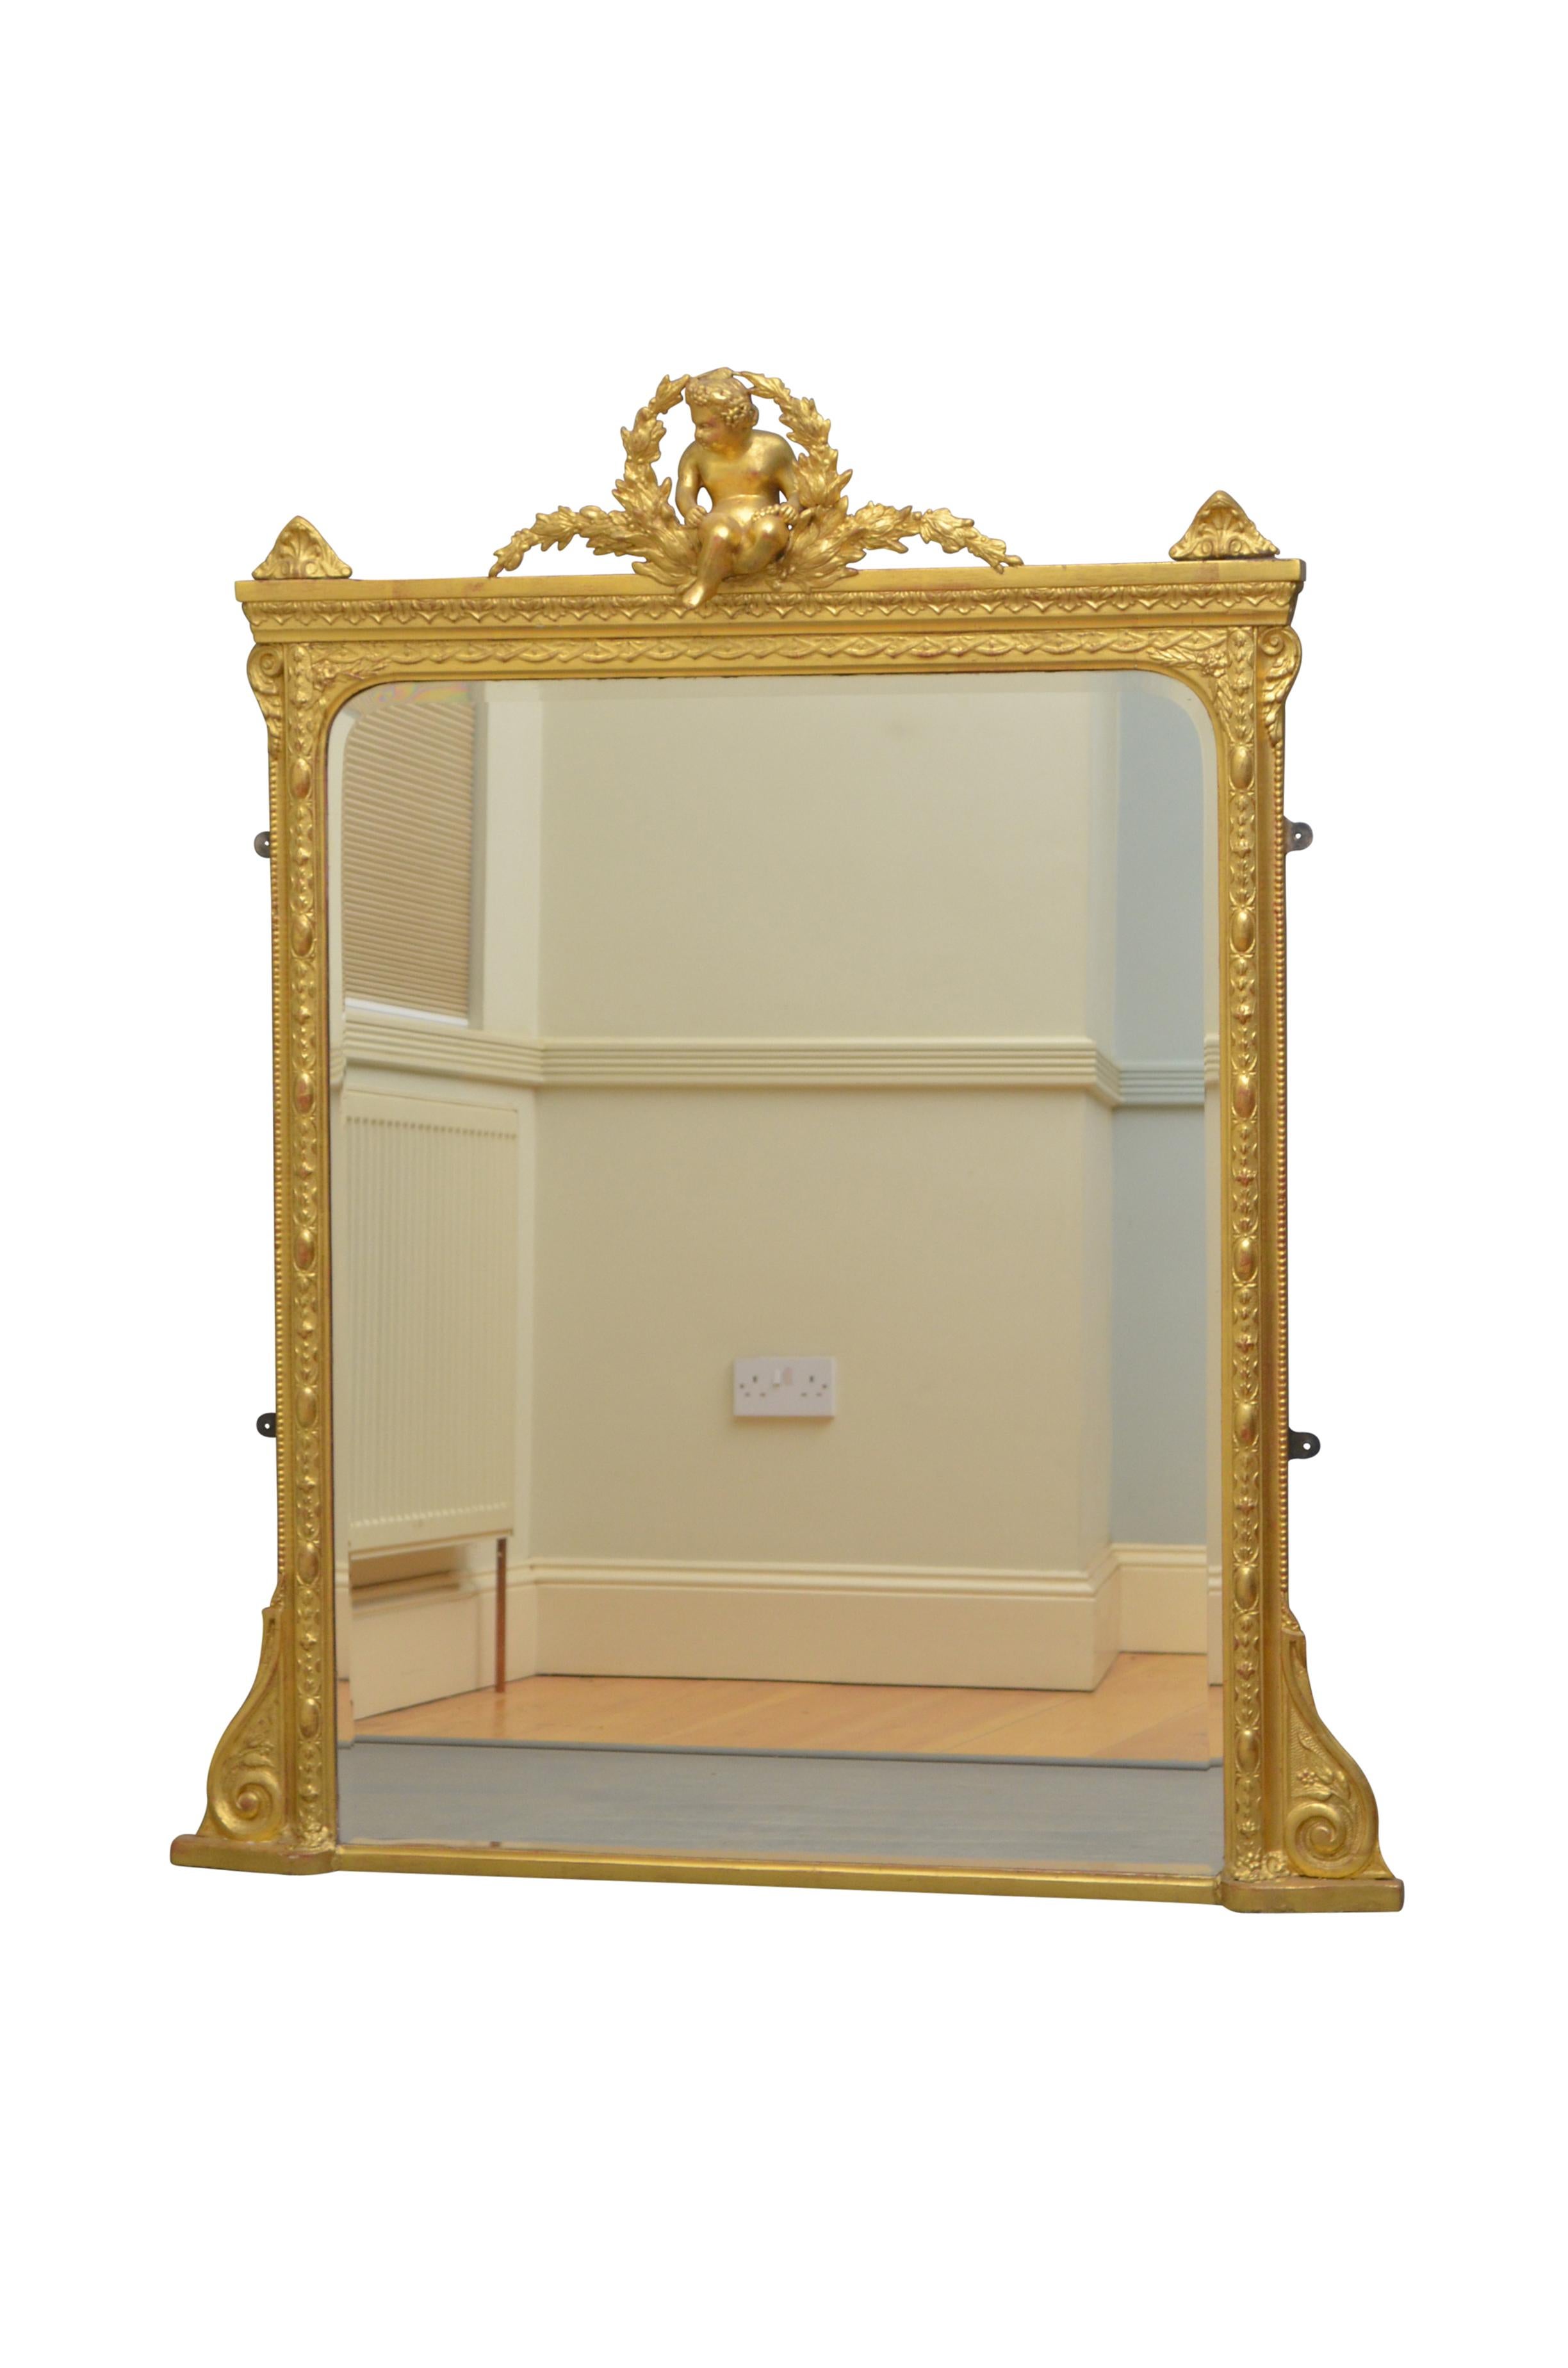 K0403 Wandspiegel aus viktorianischem Vergoldungsholz mit originalem abgeschrägtem Glas (mit kleinen Luftblasen) in einem geschnitzten Rahmen mit Putte in der Mitte und feinen Schnörkeln am Sockel. Dieser Spiegel hat sein ursprüngliches Glas und